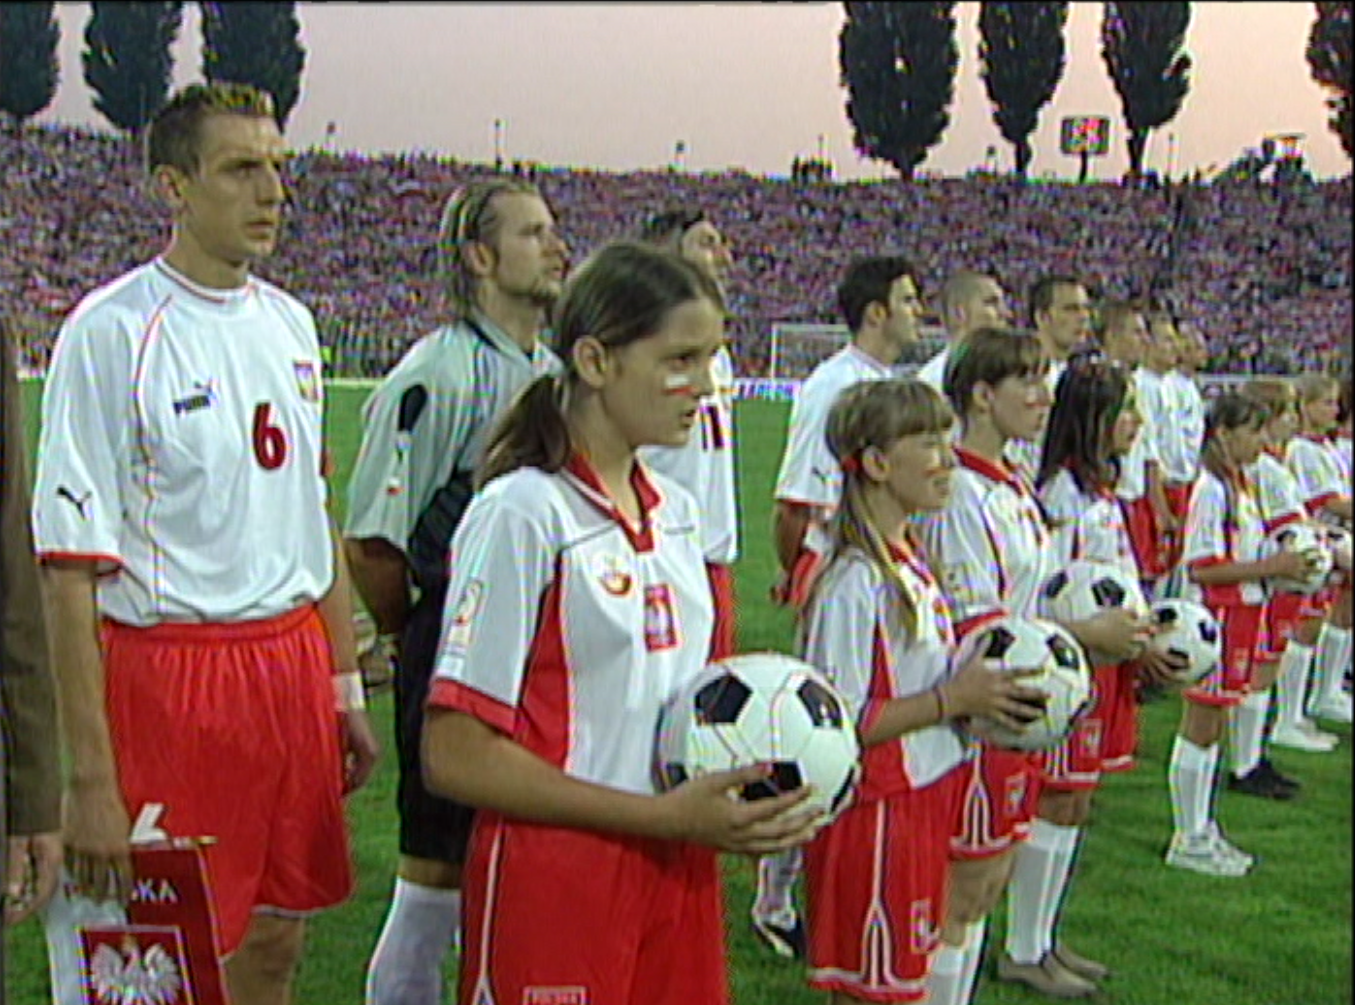 Reprezentacja Polski przed meczem towarzyskim z Belgią w Szczecinie podczas odgrywania hymnu.